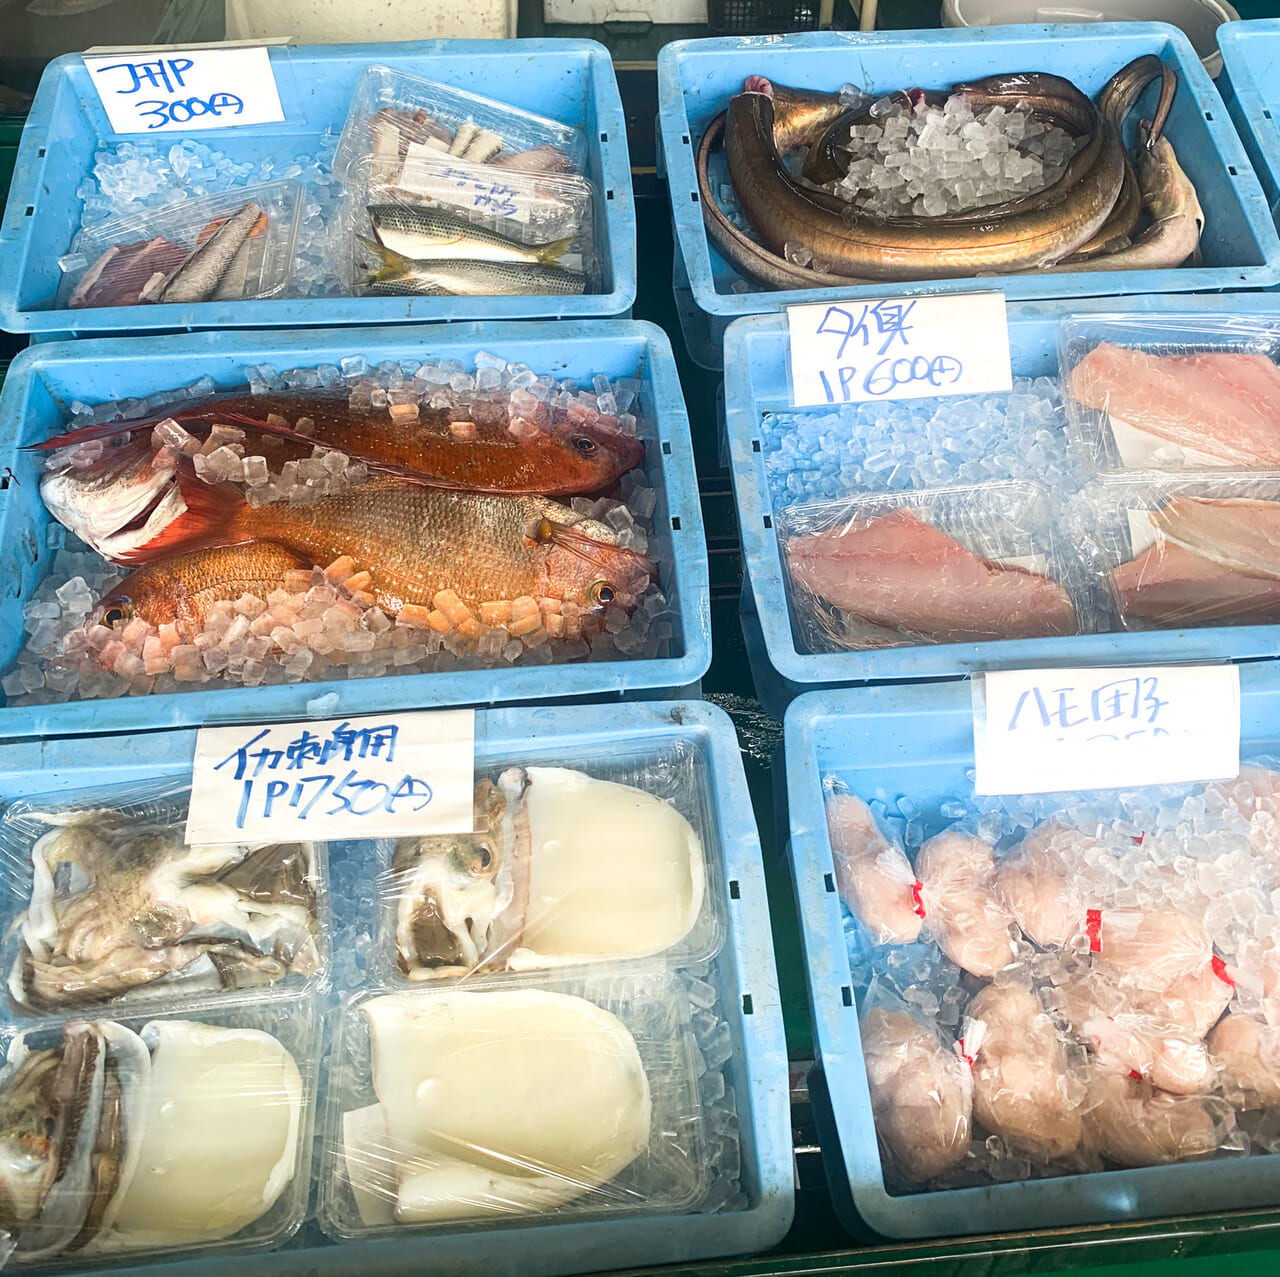 天保山町にある「今治おさかな市場」で4月18日から北海道産のカニの取り扱いが始まります!!